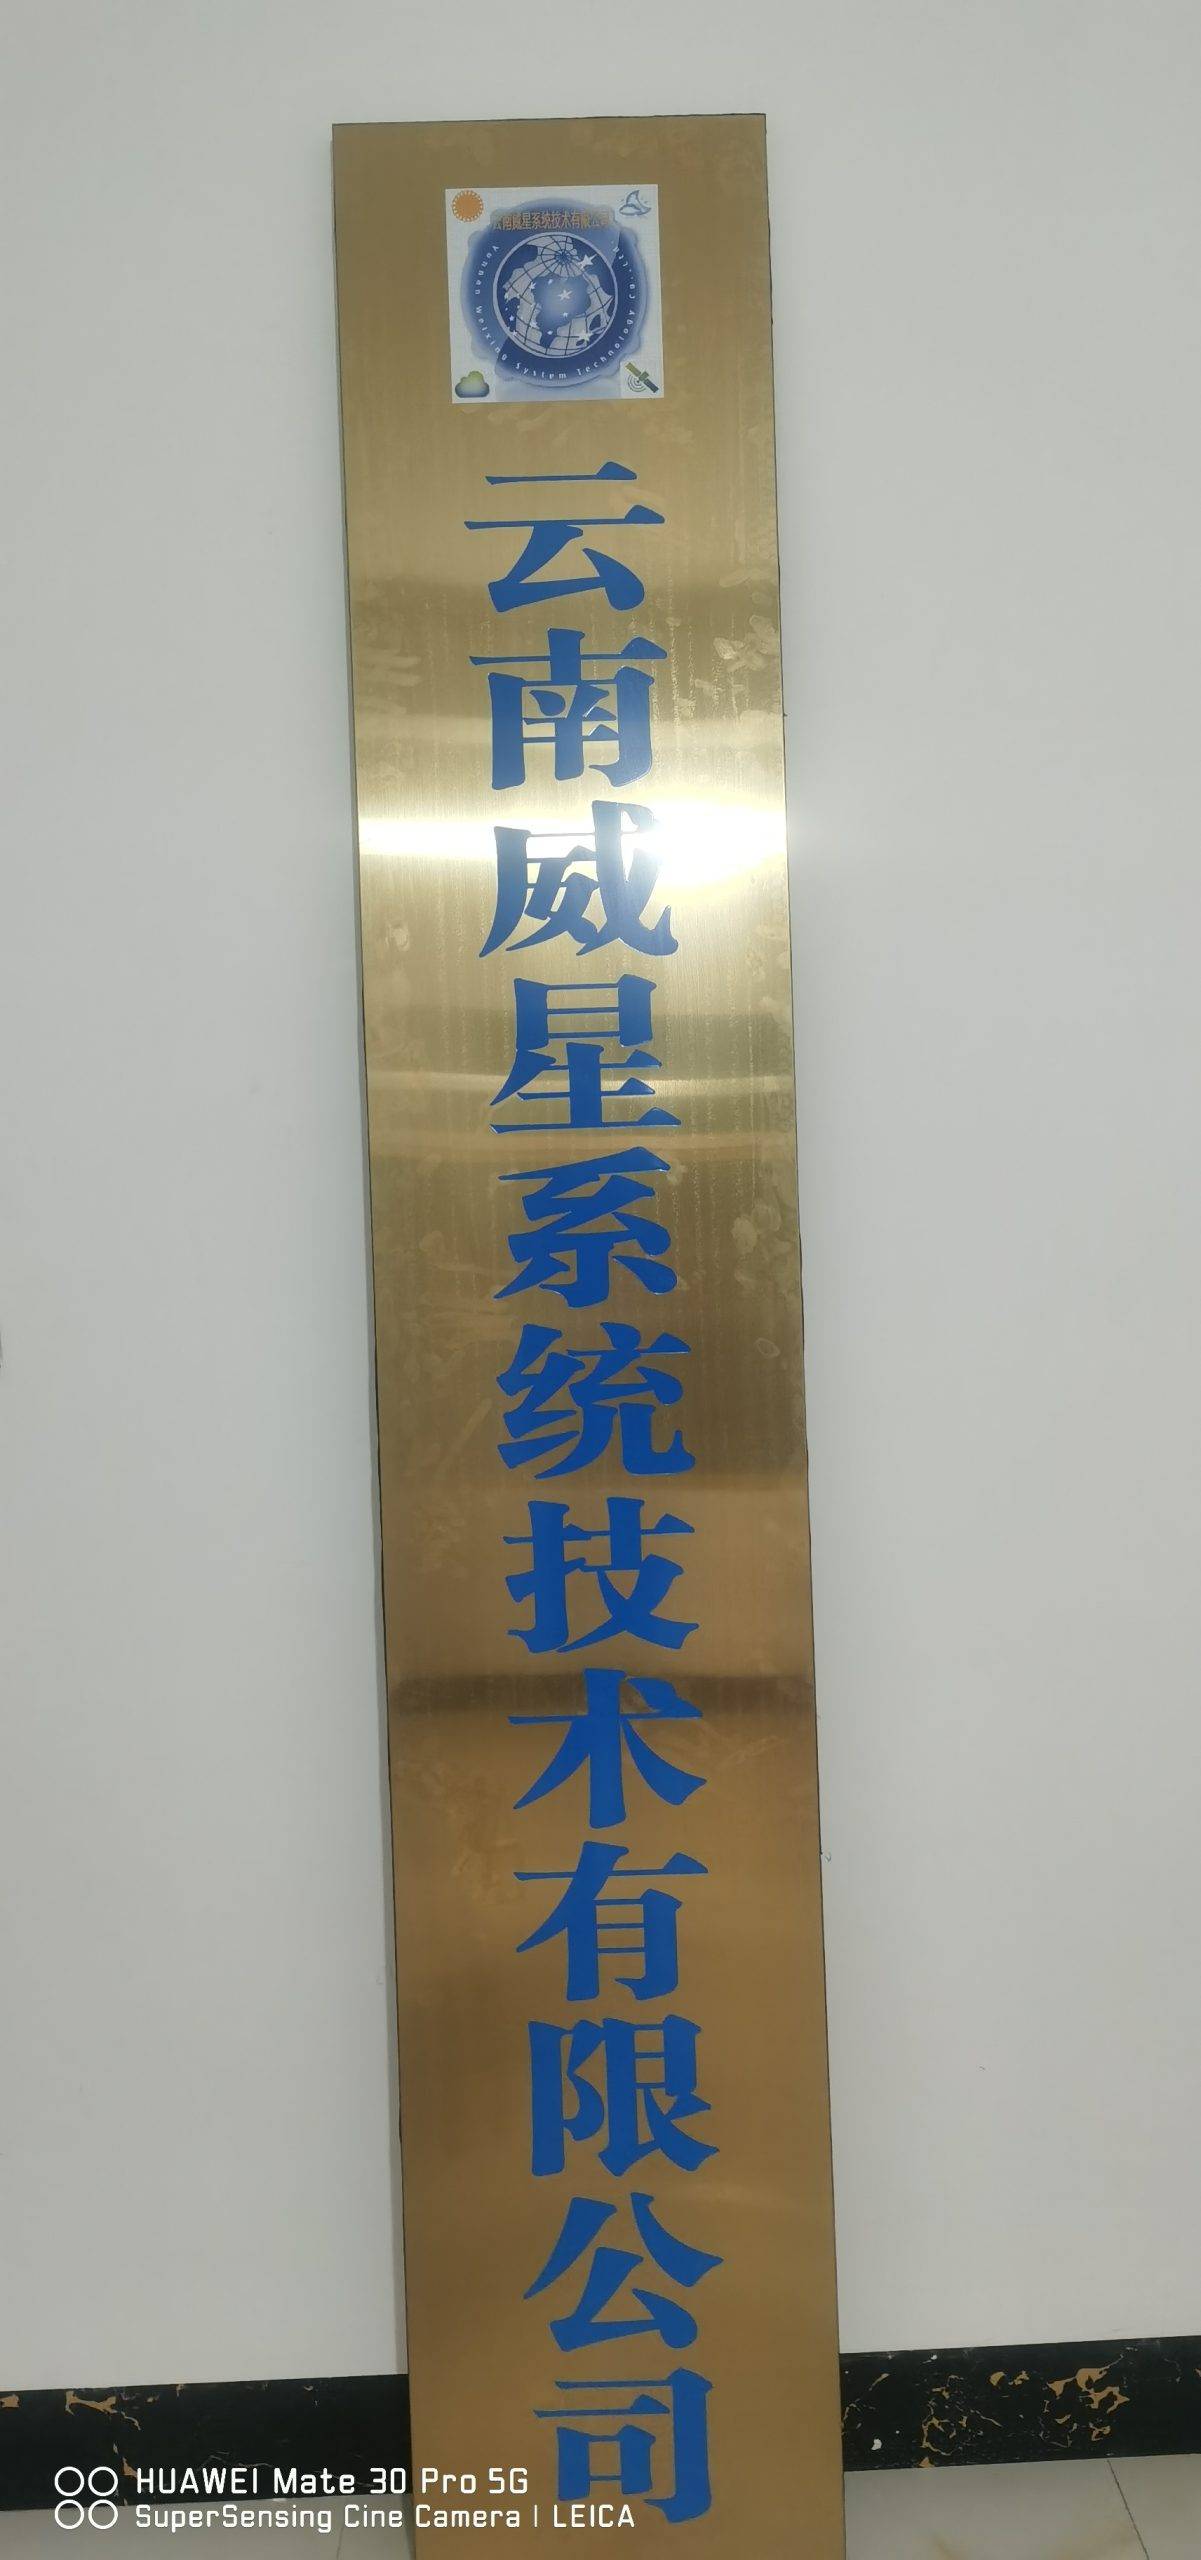 Yunnan Weixing System Technology Co., Ltd.